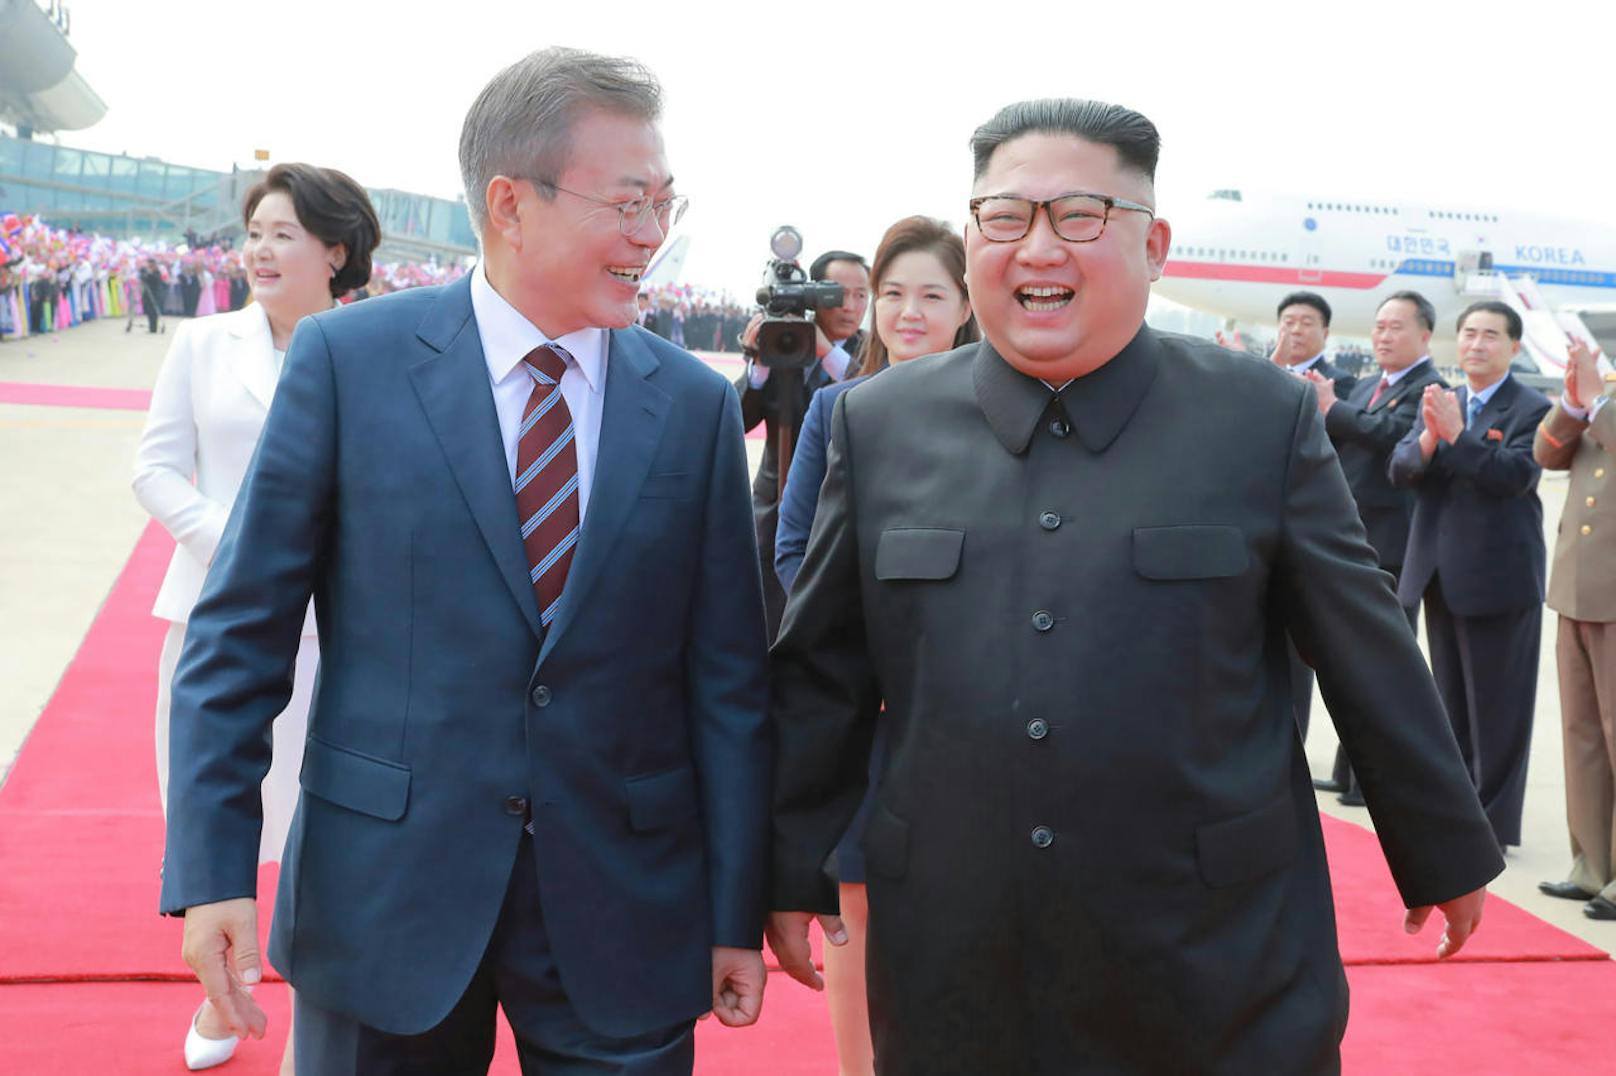 Zuvor hatten beide Führer eine gemeinsame Erklärung unterzeichnet. Anschließend unterschrieben auch die beiden Verteidigungsminister ein Abkommen zur Verringerung der Spannungen auf der koreanischen Halbinsel.